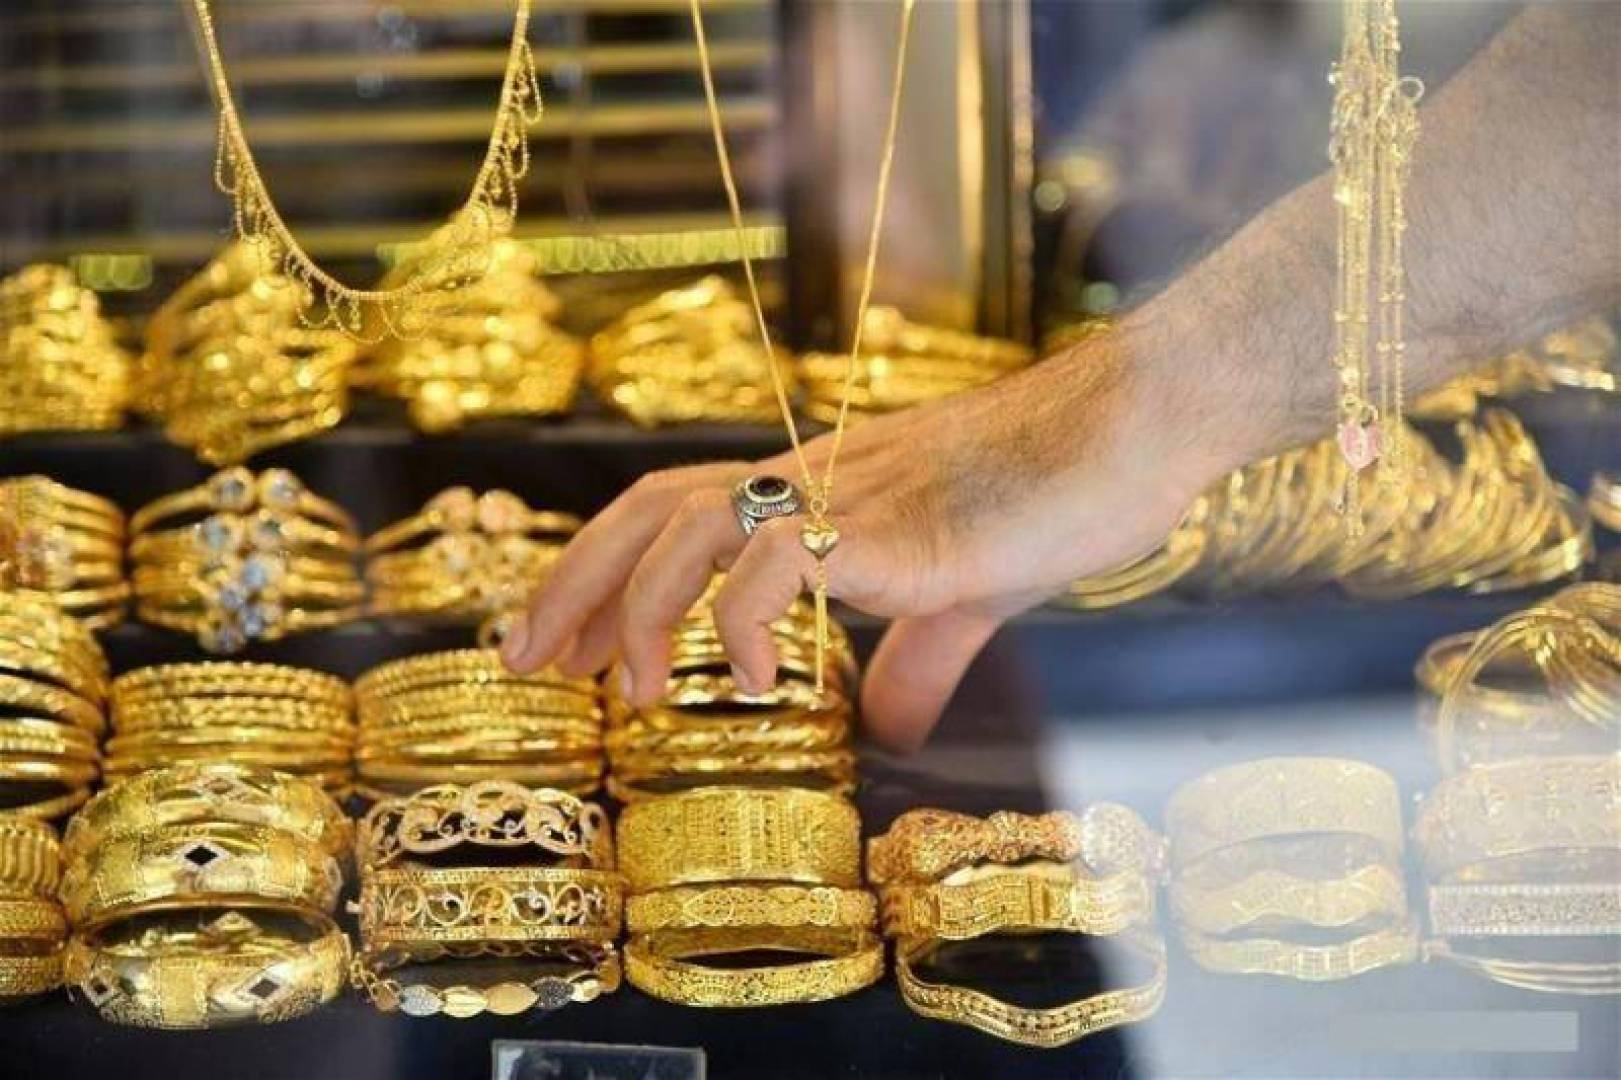 انخفاض جديد في سعر الذهب عيار 21 في محلات الصاغة افرحي يا عروسة وانزلي اشتري الشبكة